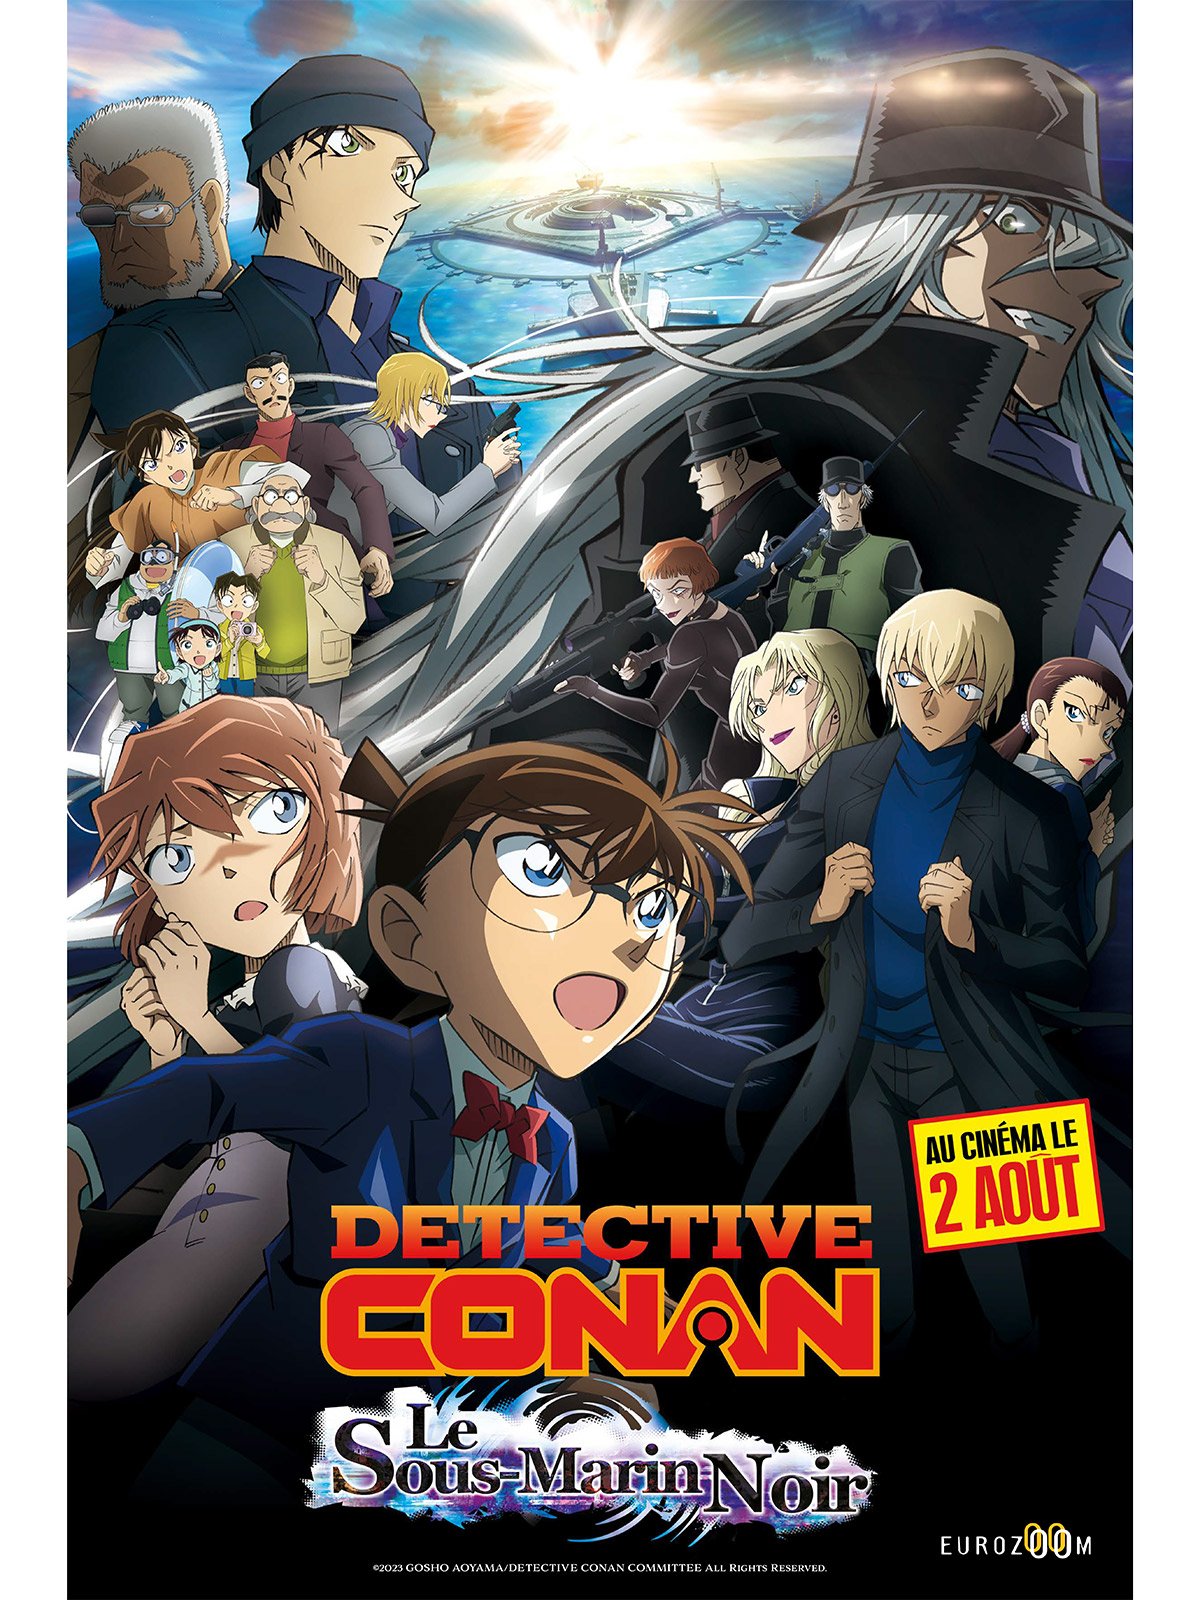 Détective Conan: le sous-marin noir